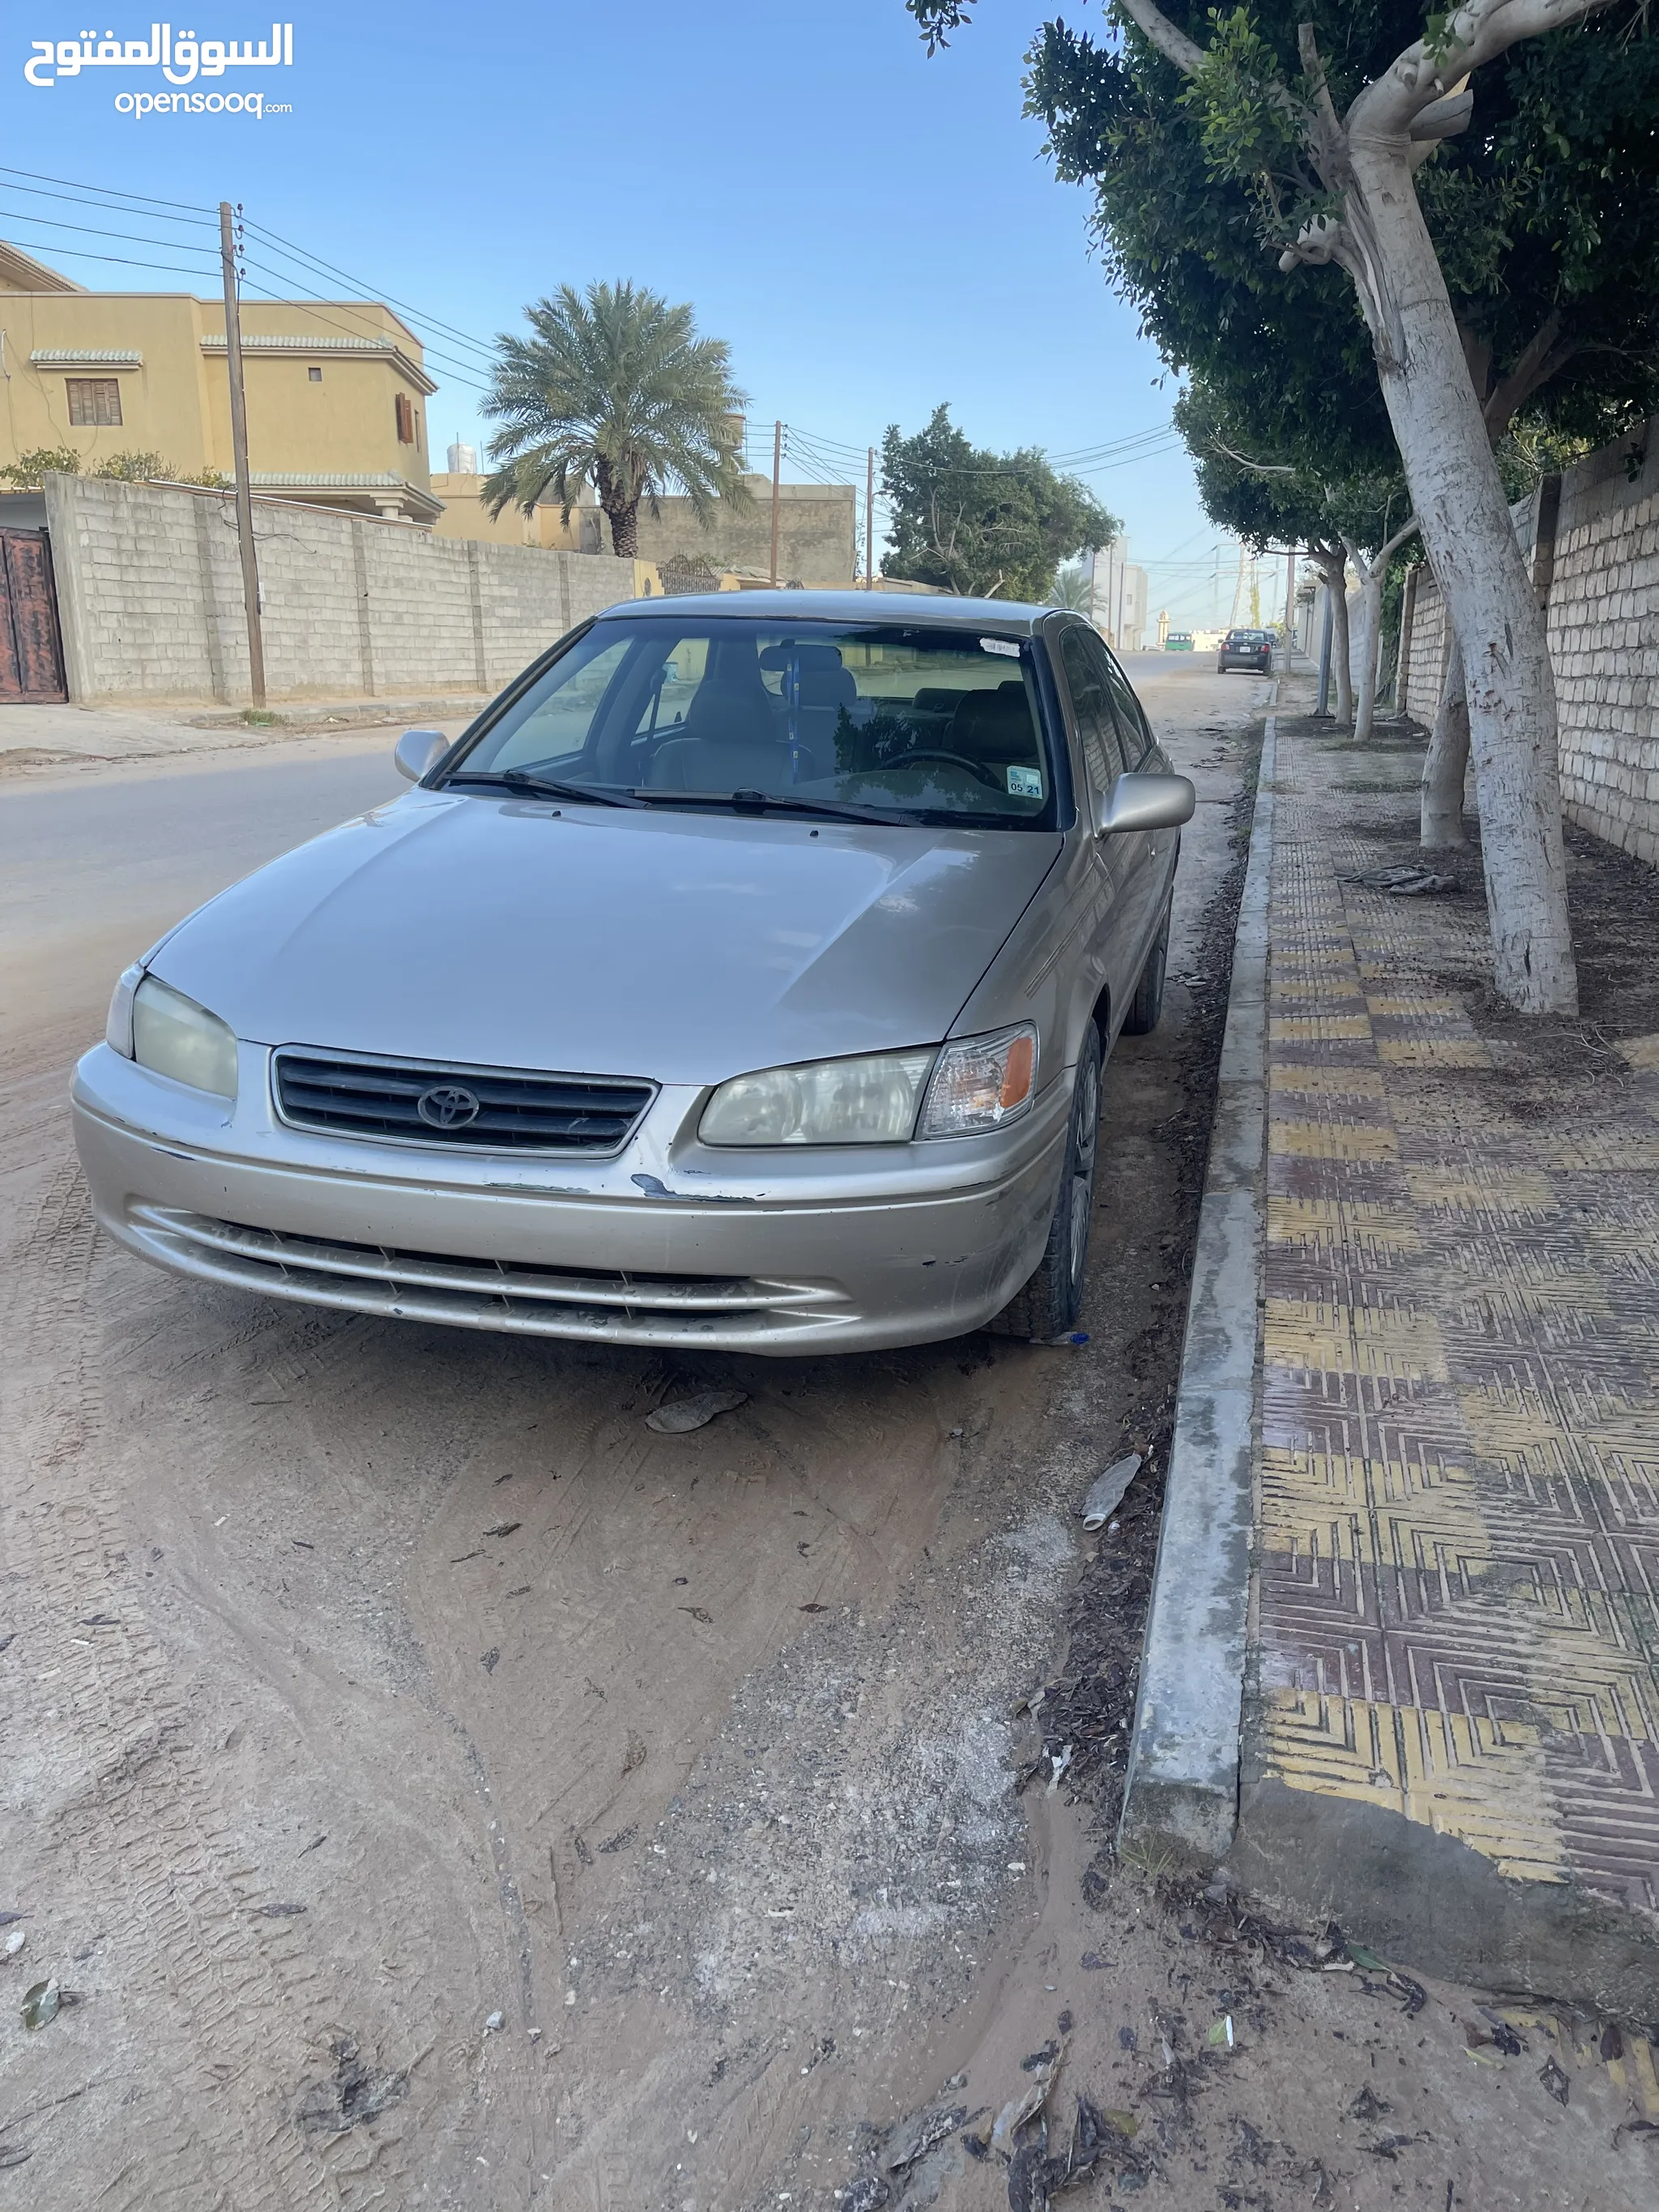 سيارات و مركبات : سيارات للبيع : تويوتا كامري : (صفحة 16) : ليبيا | السوق  المفتوح